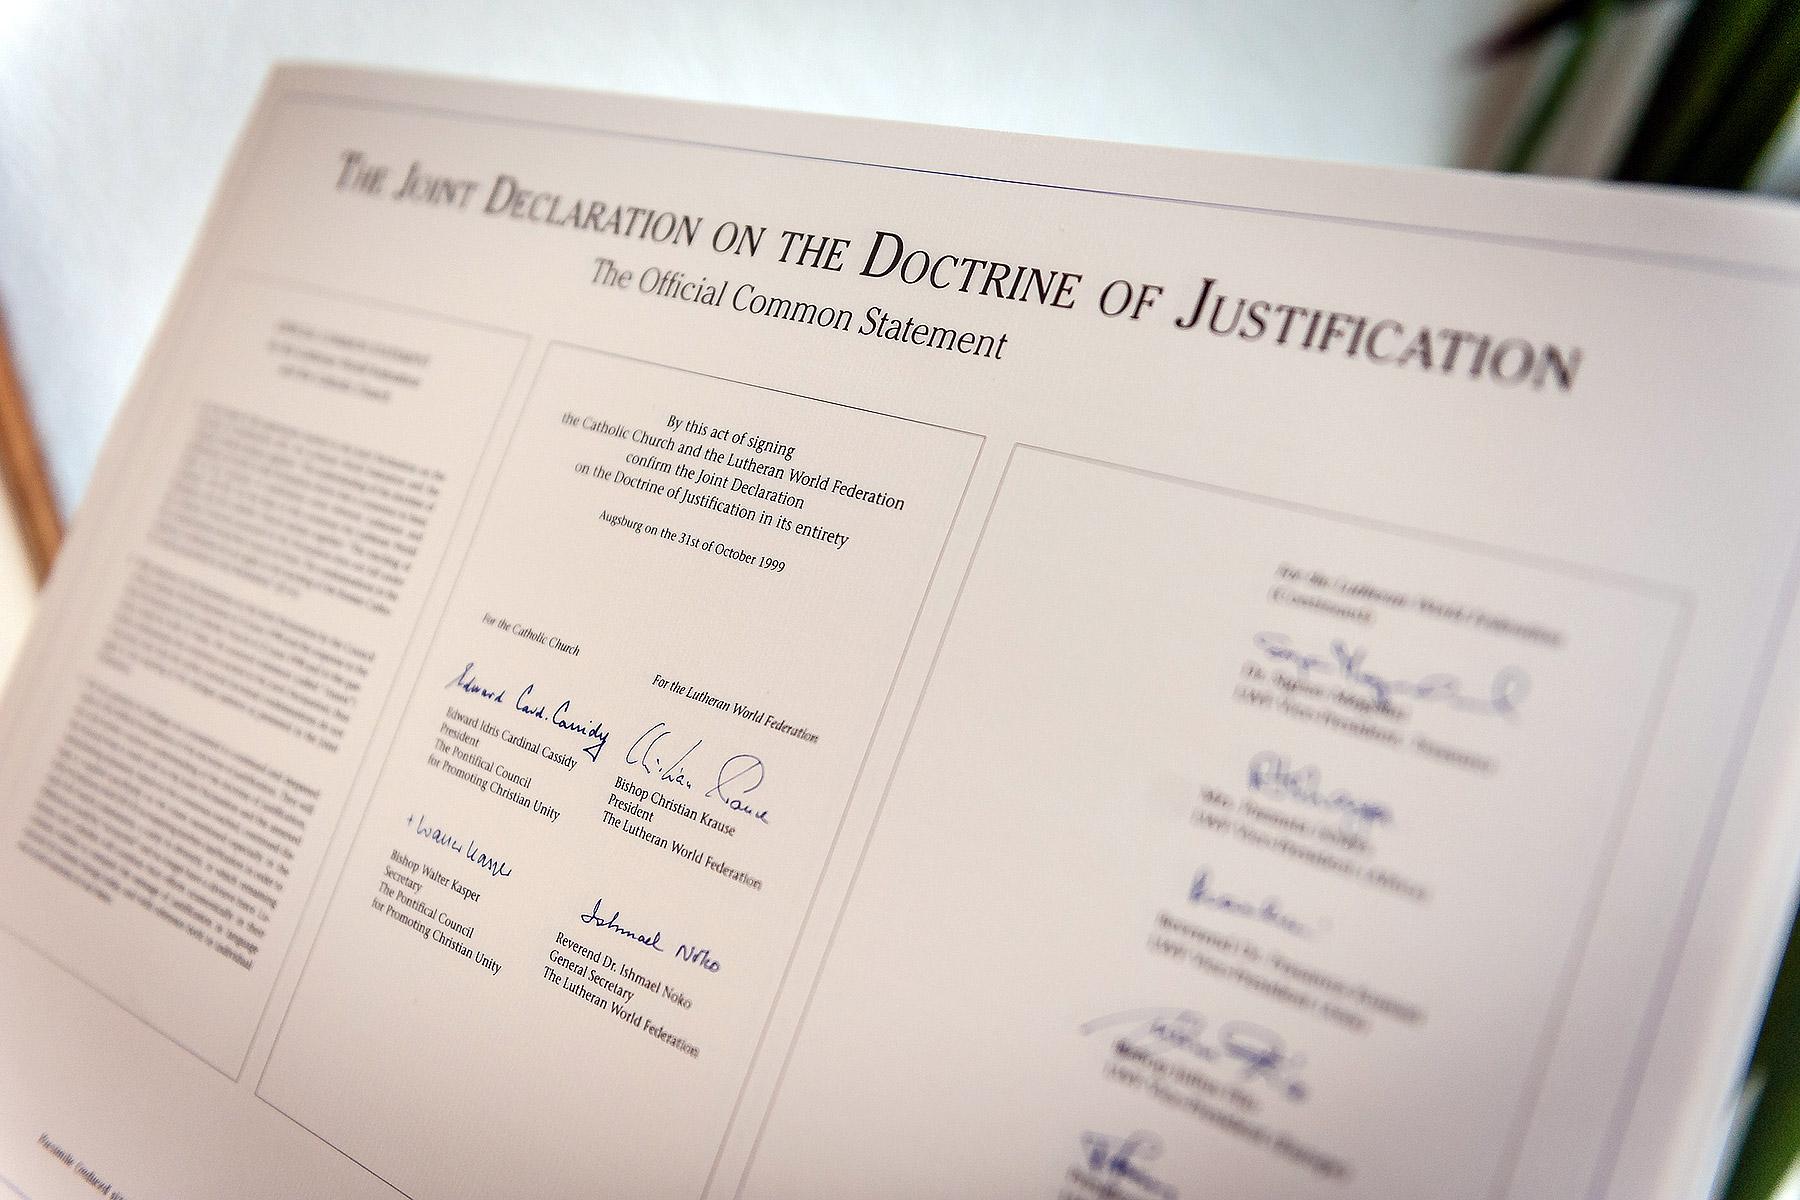 Kopie der offiziellen Erklärung zur Rechtfertigungslehre. Foto: LWB/S. Gallay